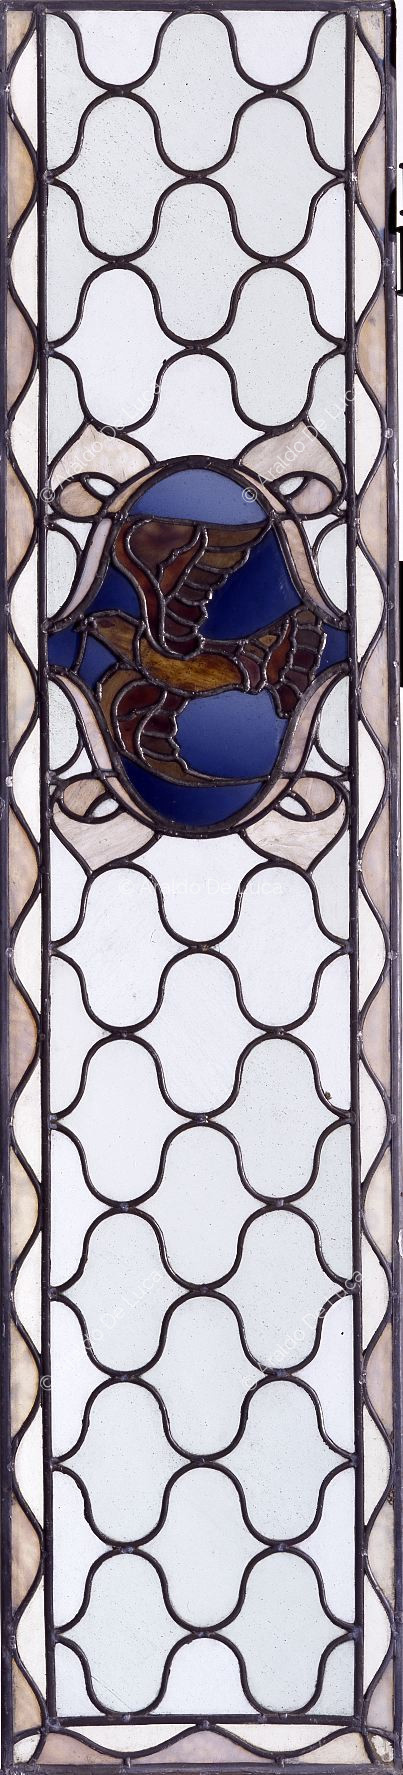 Buntglasfenster mit geometrischem Motiv und Taube